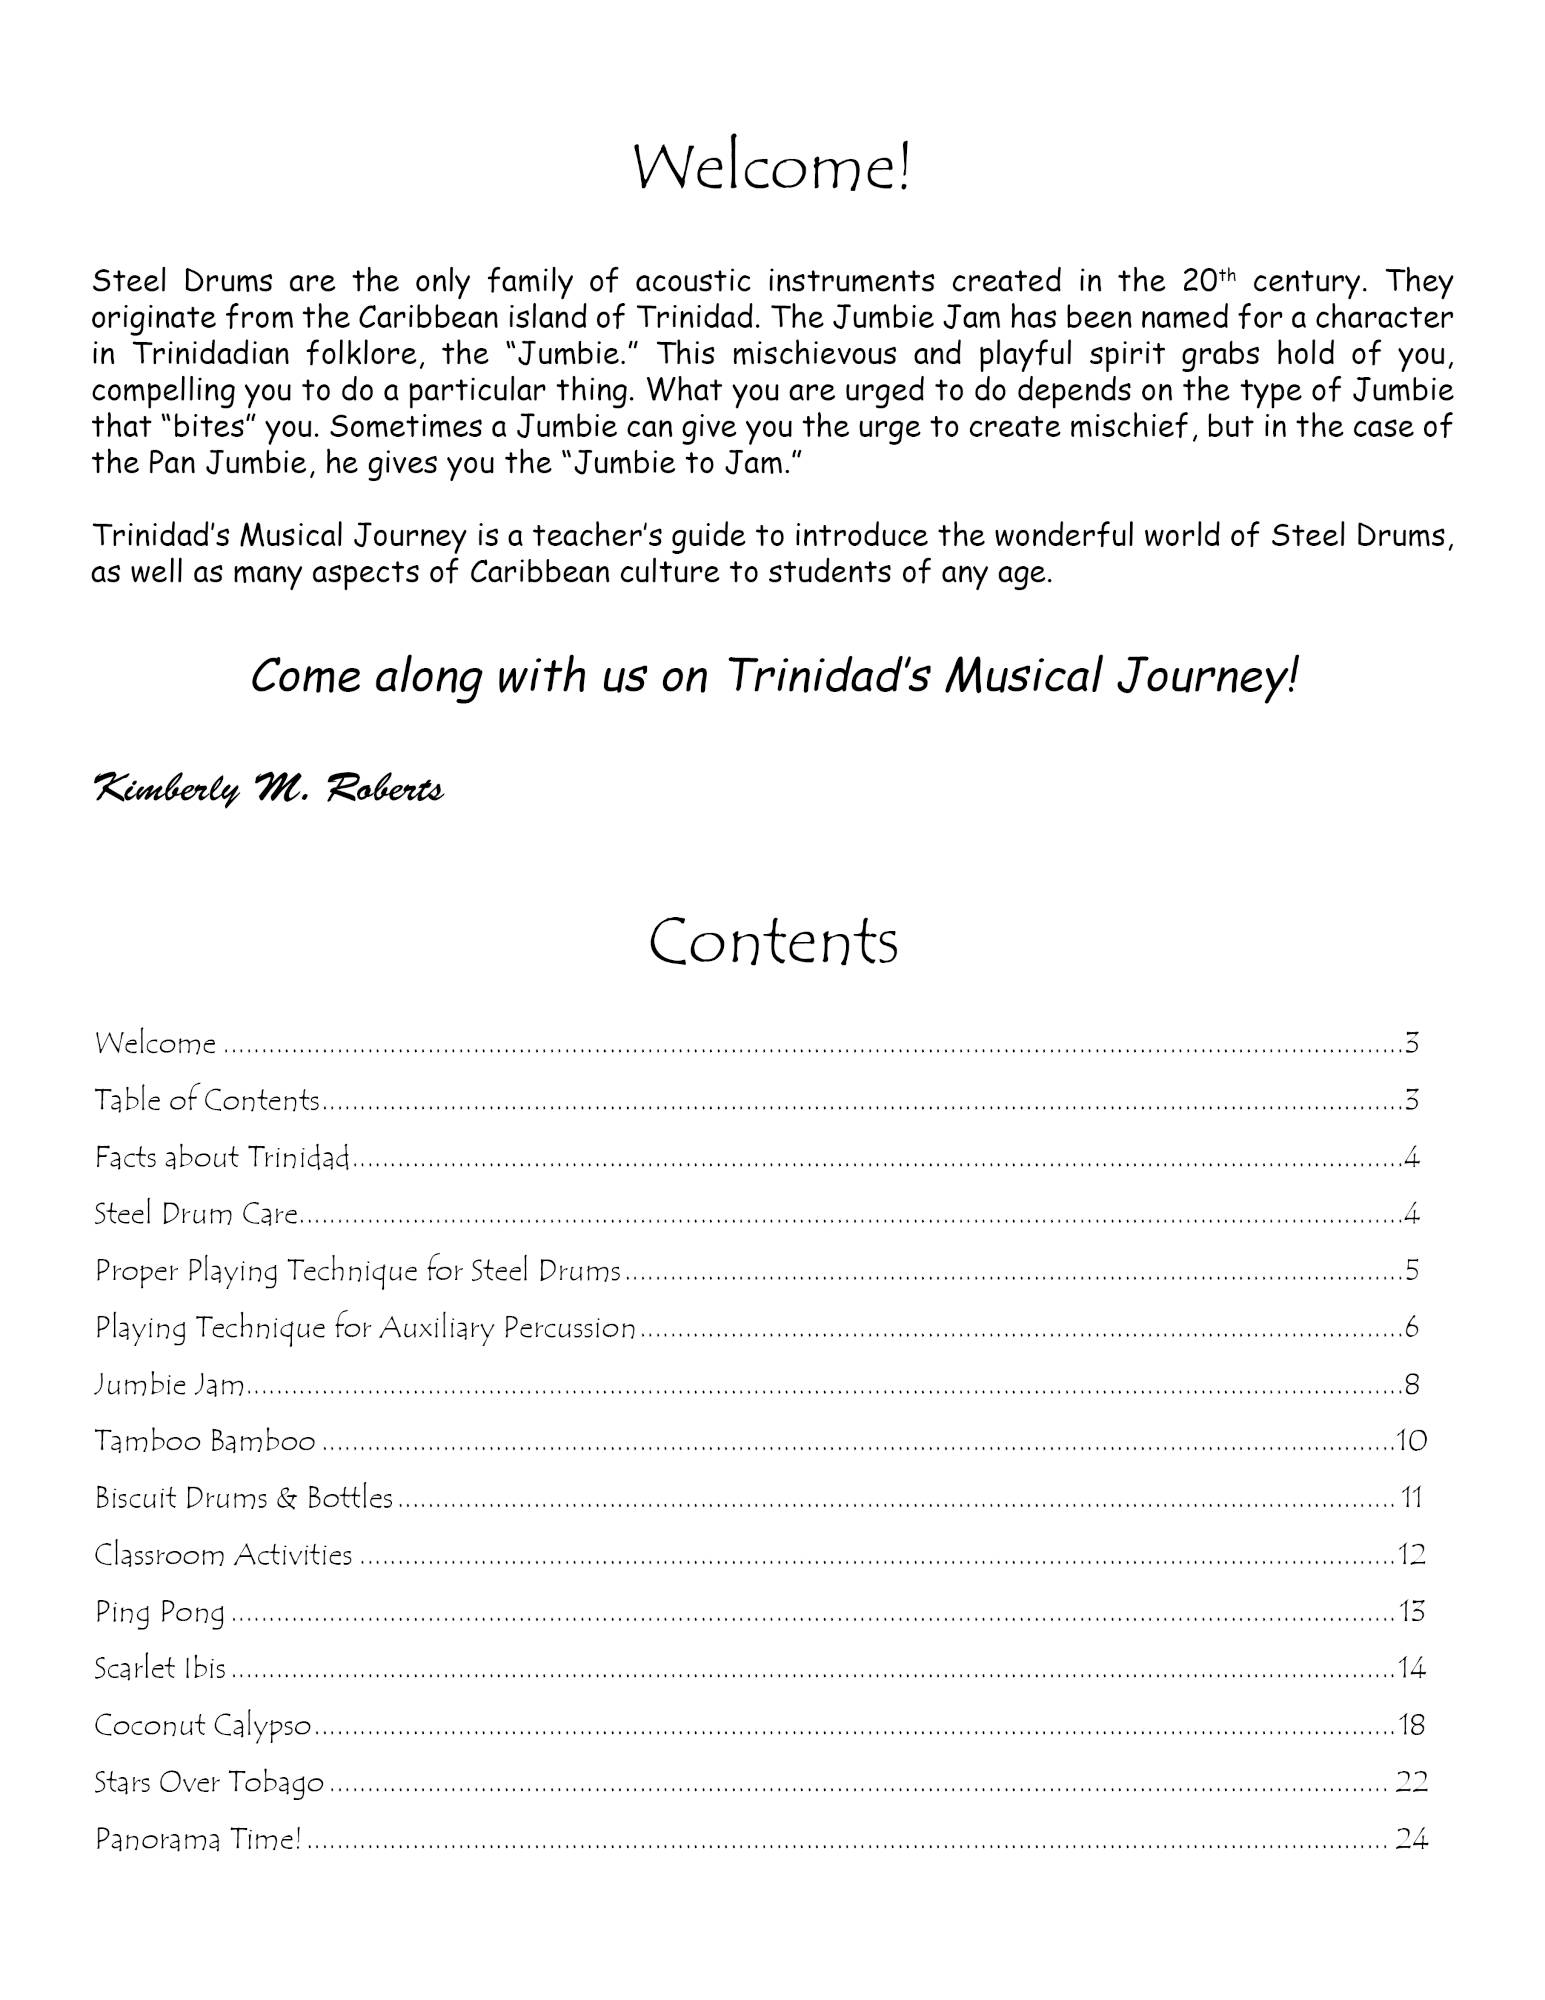 Panyard Jumbie Jam Trinidad's Musical Journey - Comprehensive Teacher's Guide